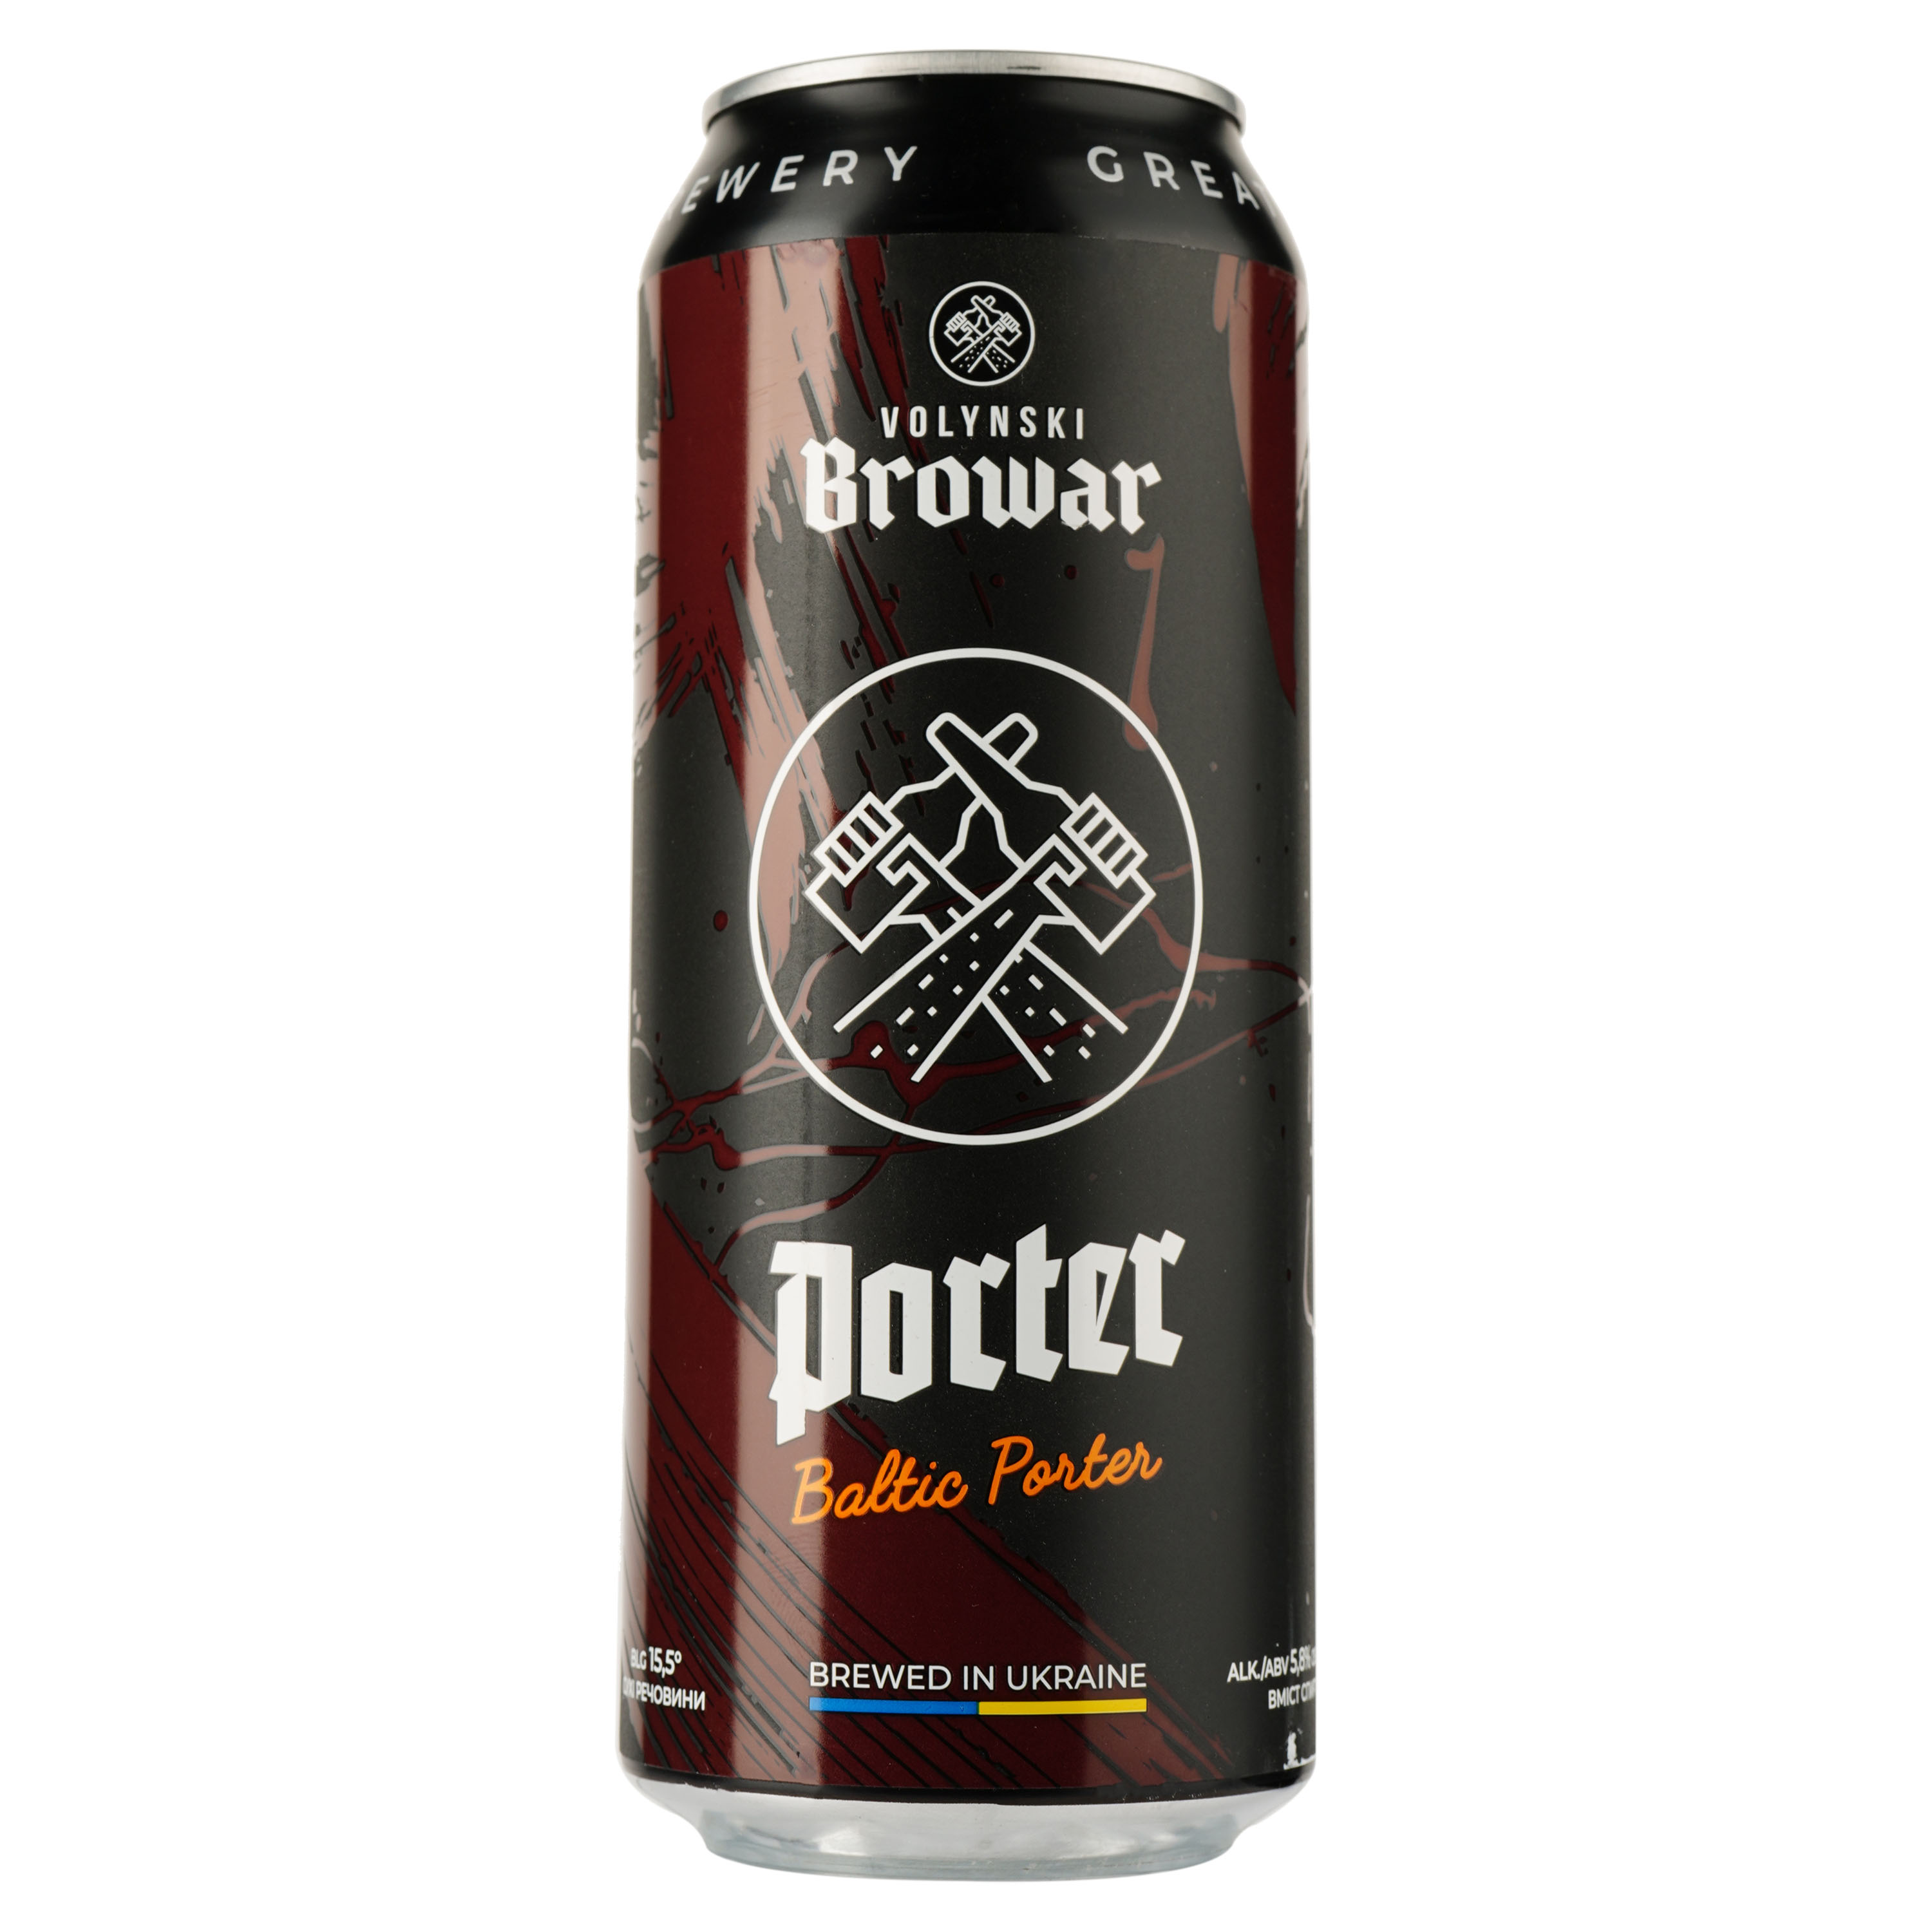 Пиво Volynski Browar Porter, темное, нефильтрованное, 5,8%, ж/б, 0,5 л - фото 1